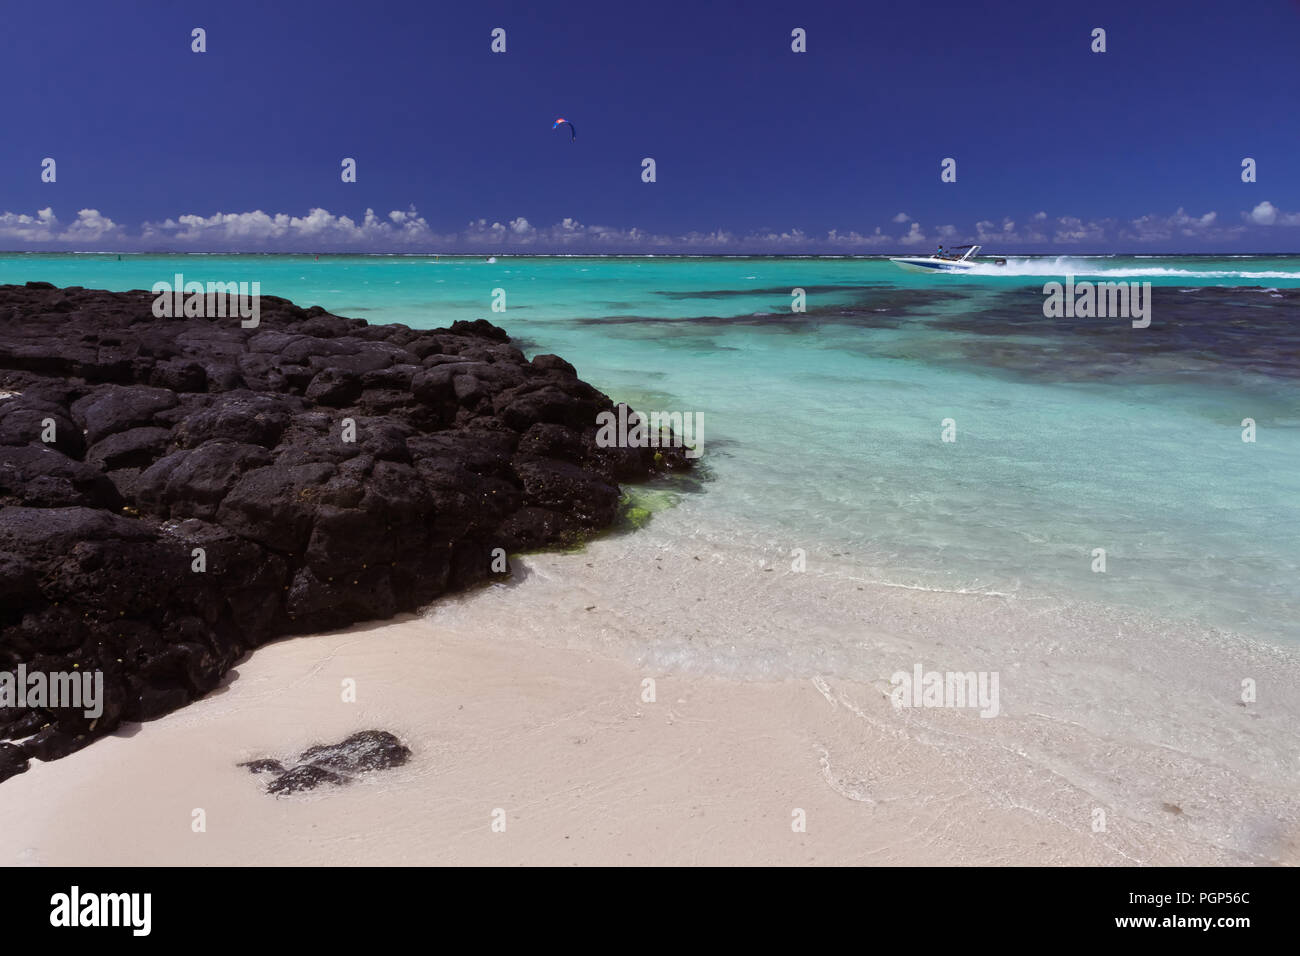 Pietre Nere formato da lava solidificata su una spiaggia in origine vulca? Isola di Mauritius, Oceano Indiano Foto Stock